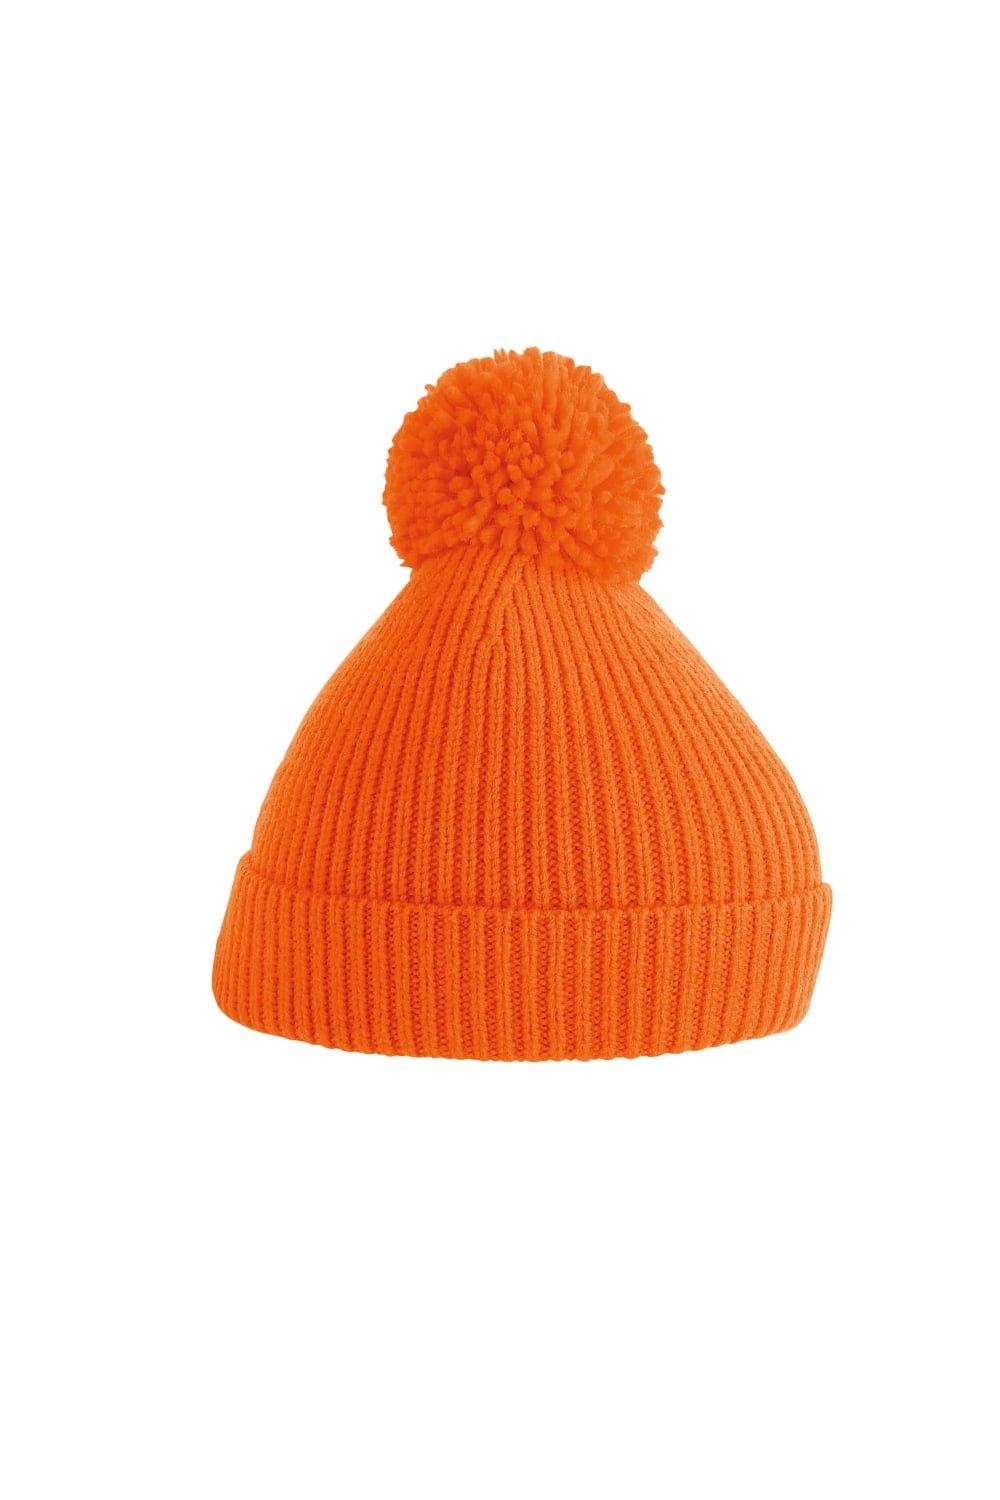 Вязаная шапка в рубчик с помпоном Beechfield, оранжевый